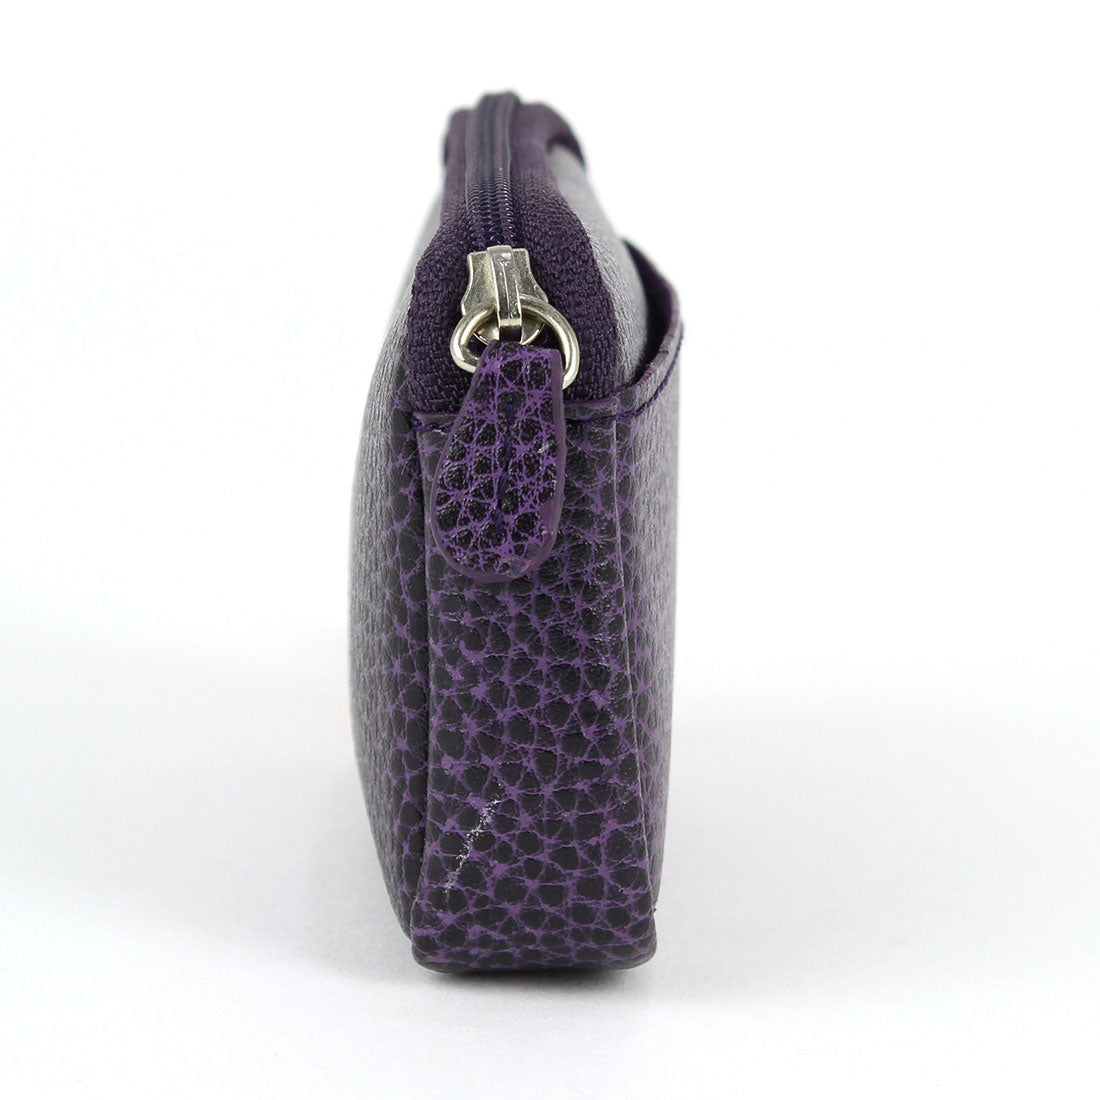 Small Wallet/Card Holder - Violet#color_laurige-violet